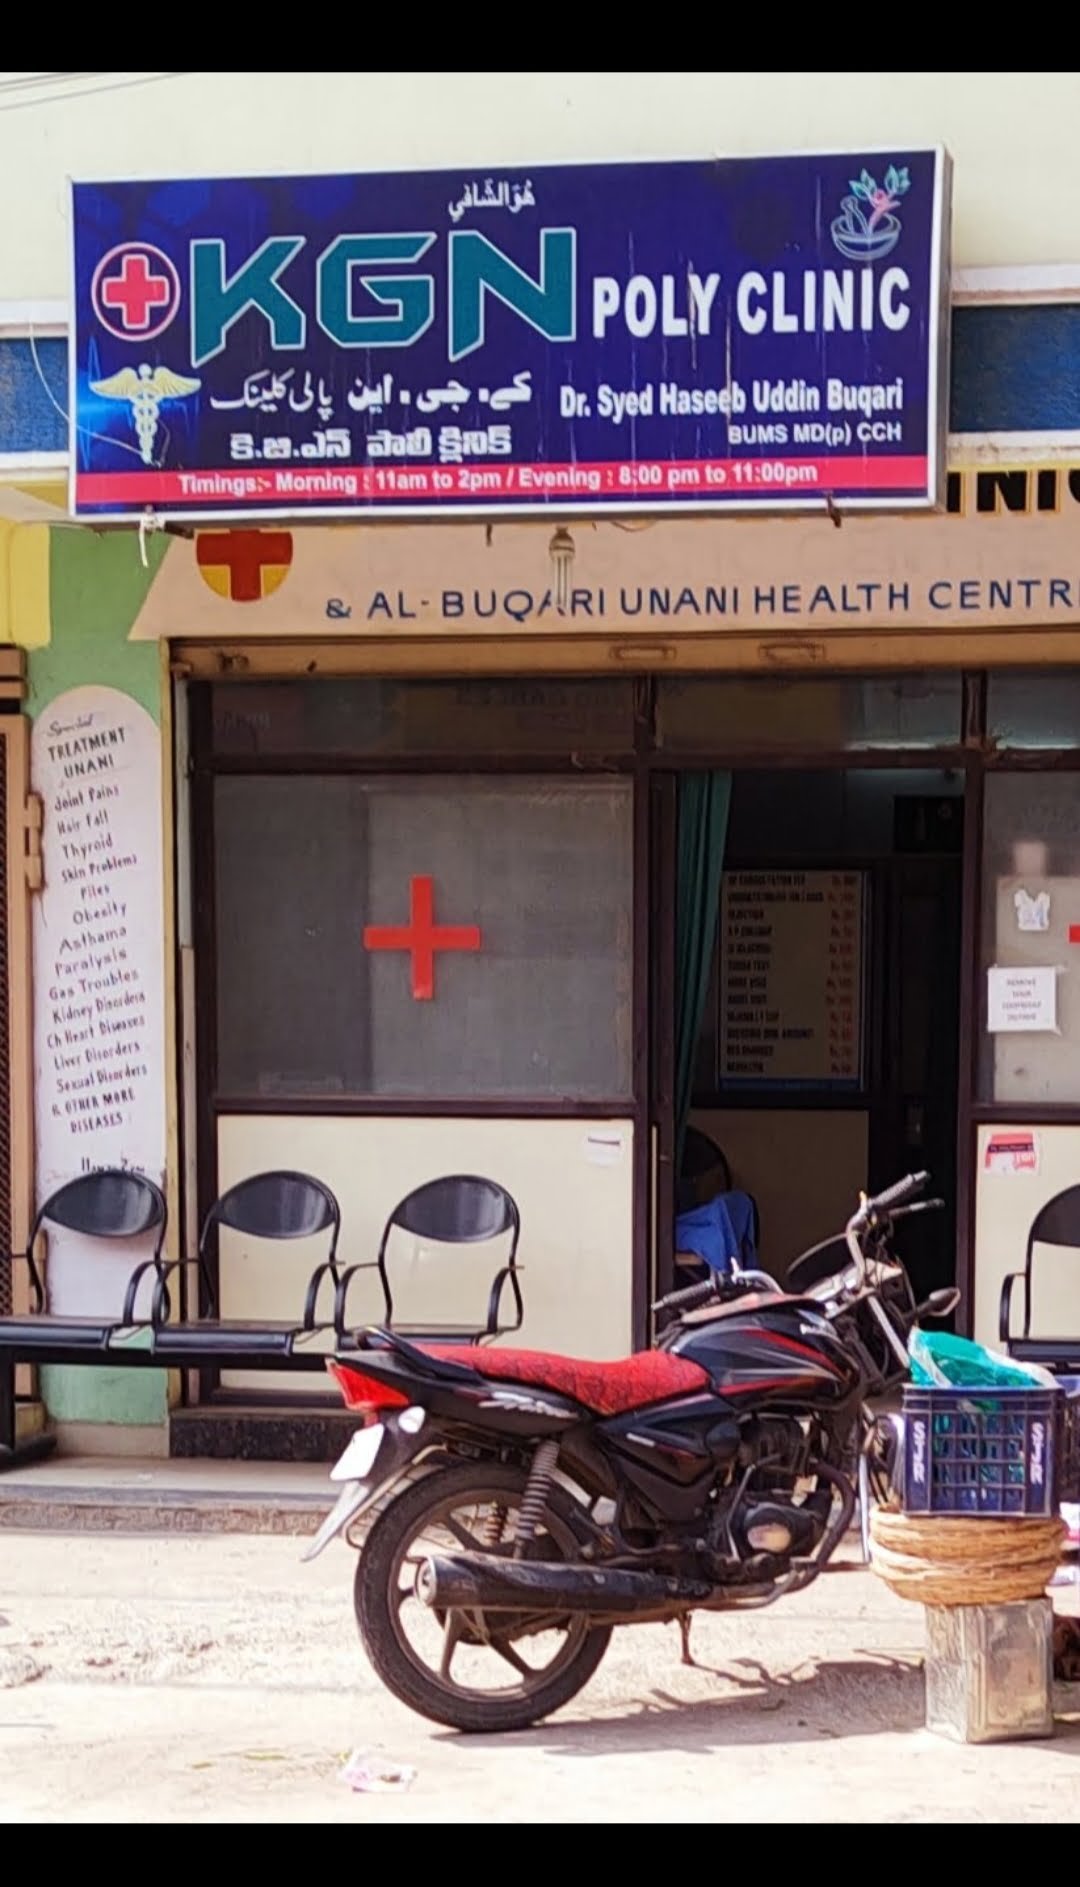 K.G.N Poly Clinics in edi bazar